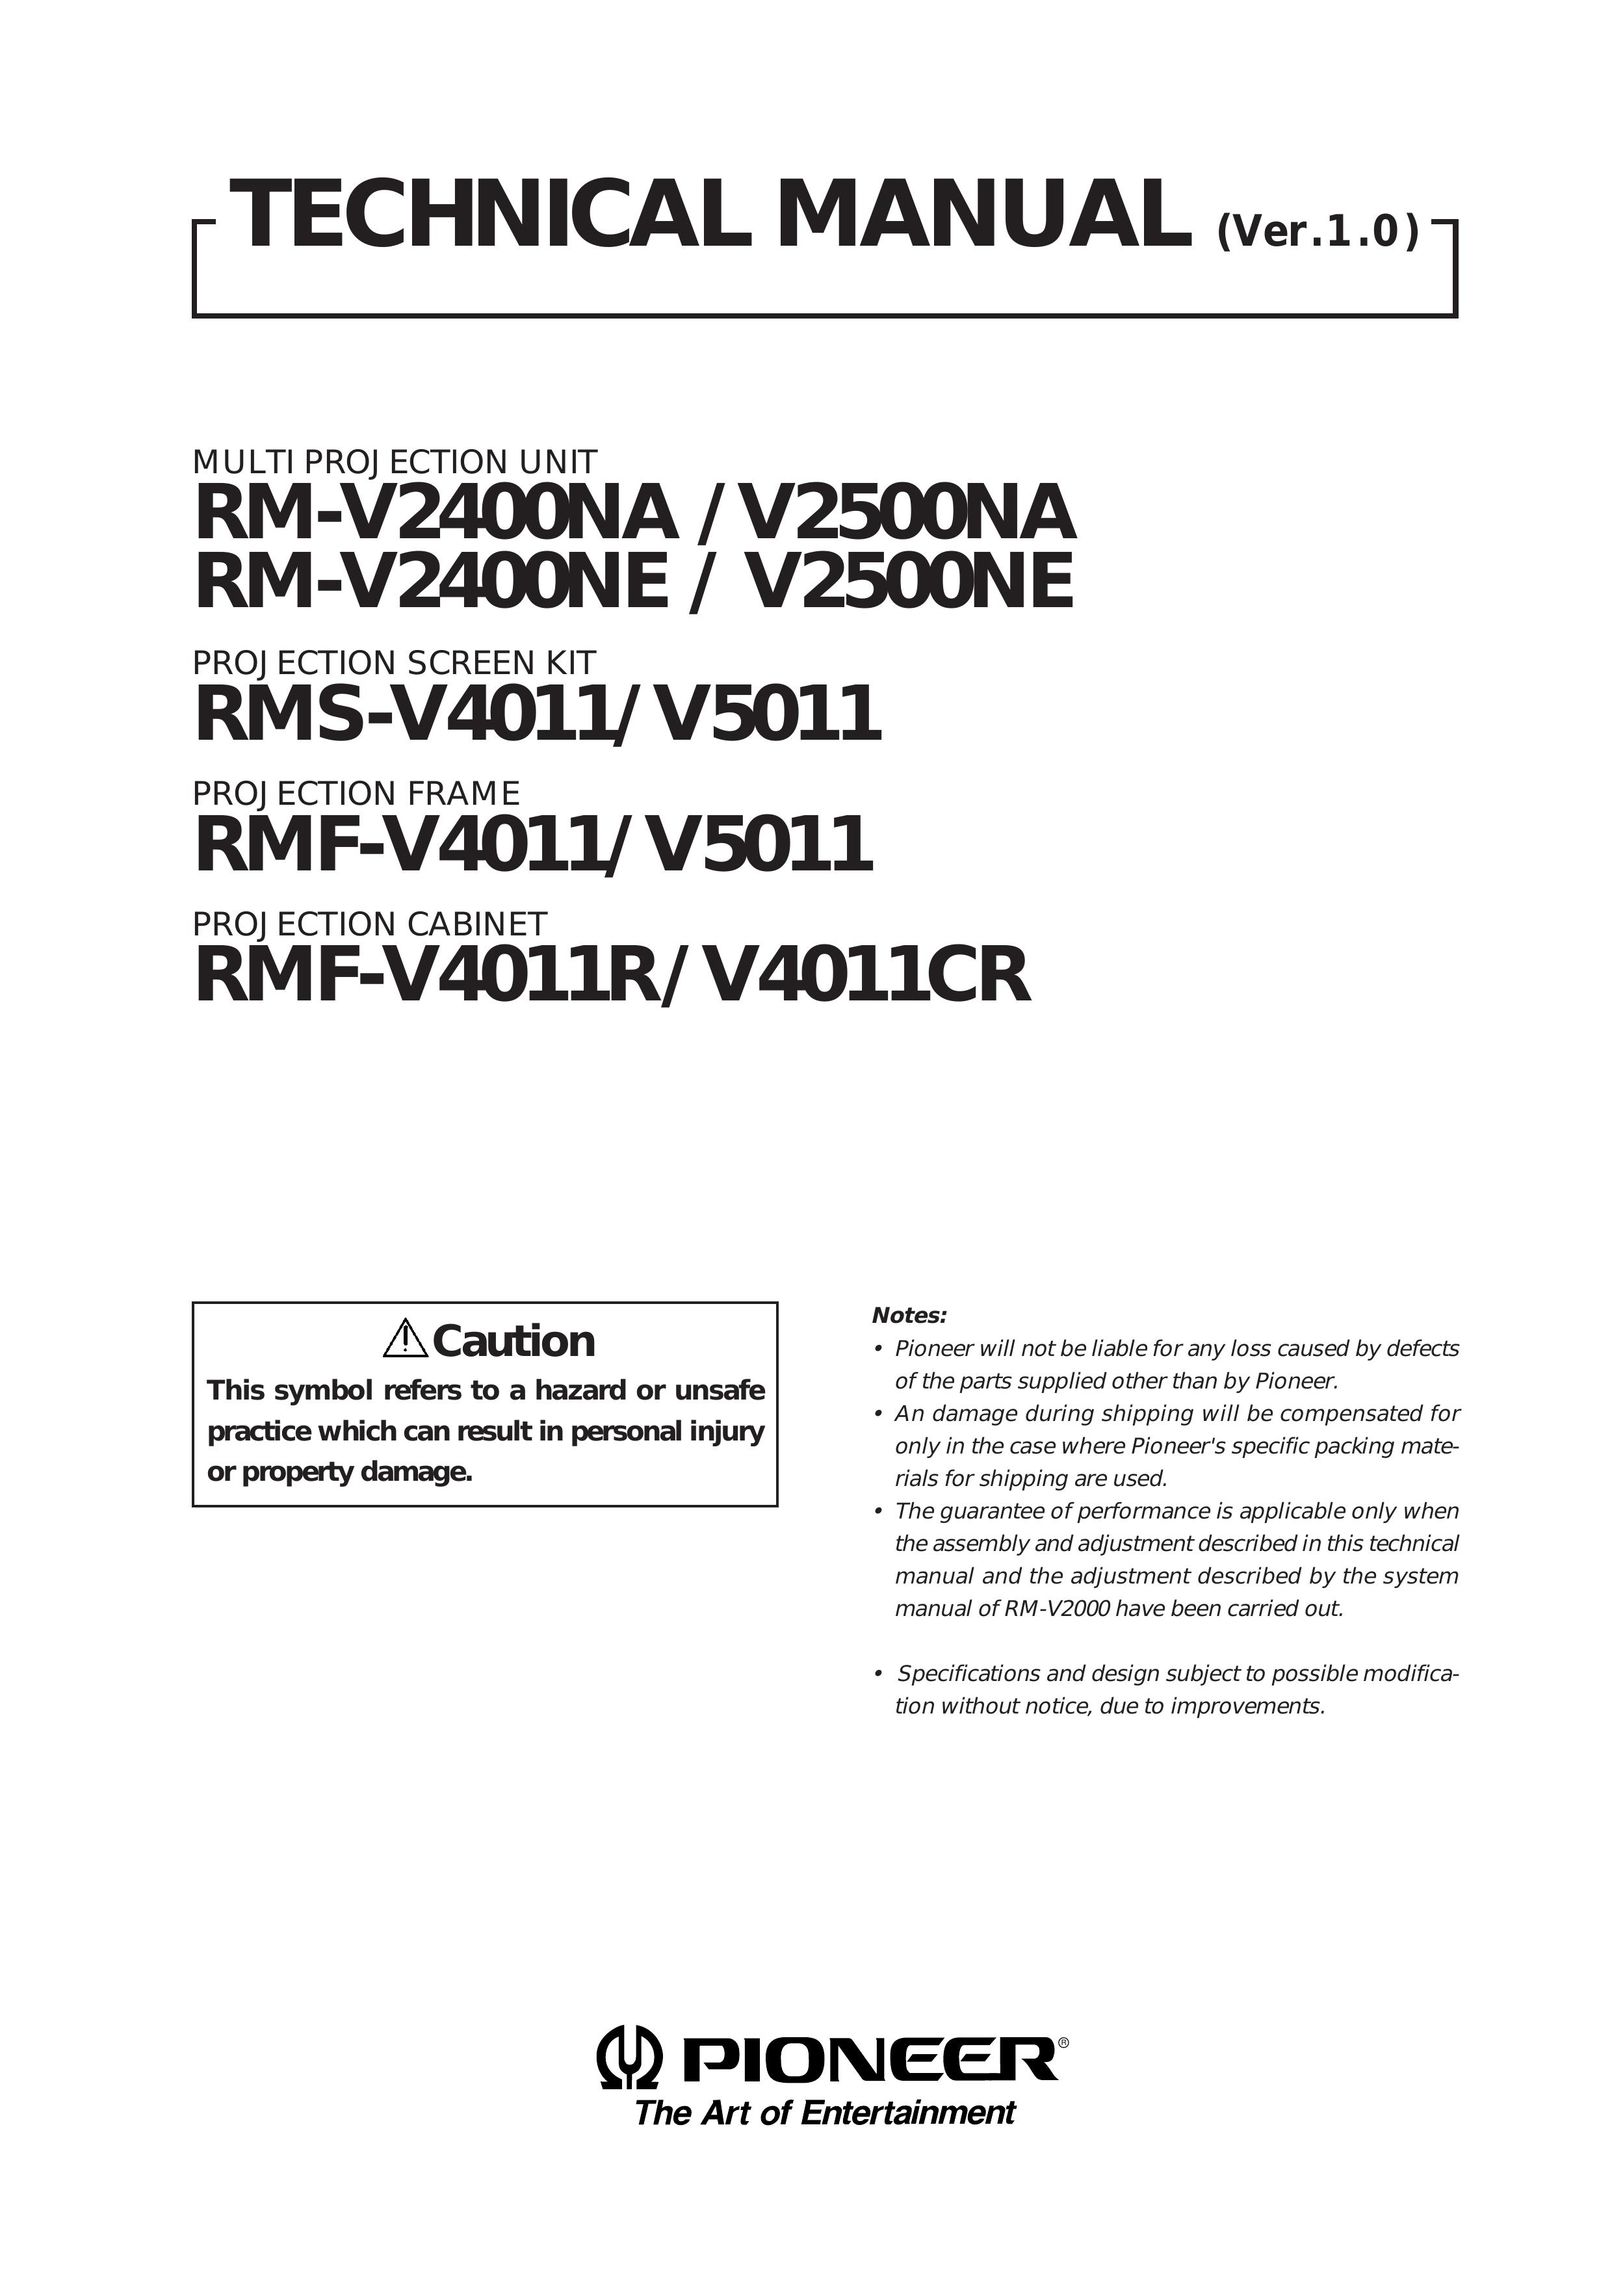 Pioneer RM-V2400NE Projector User Manual